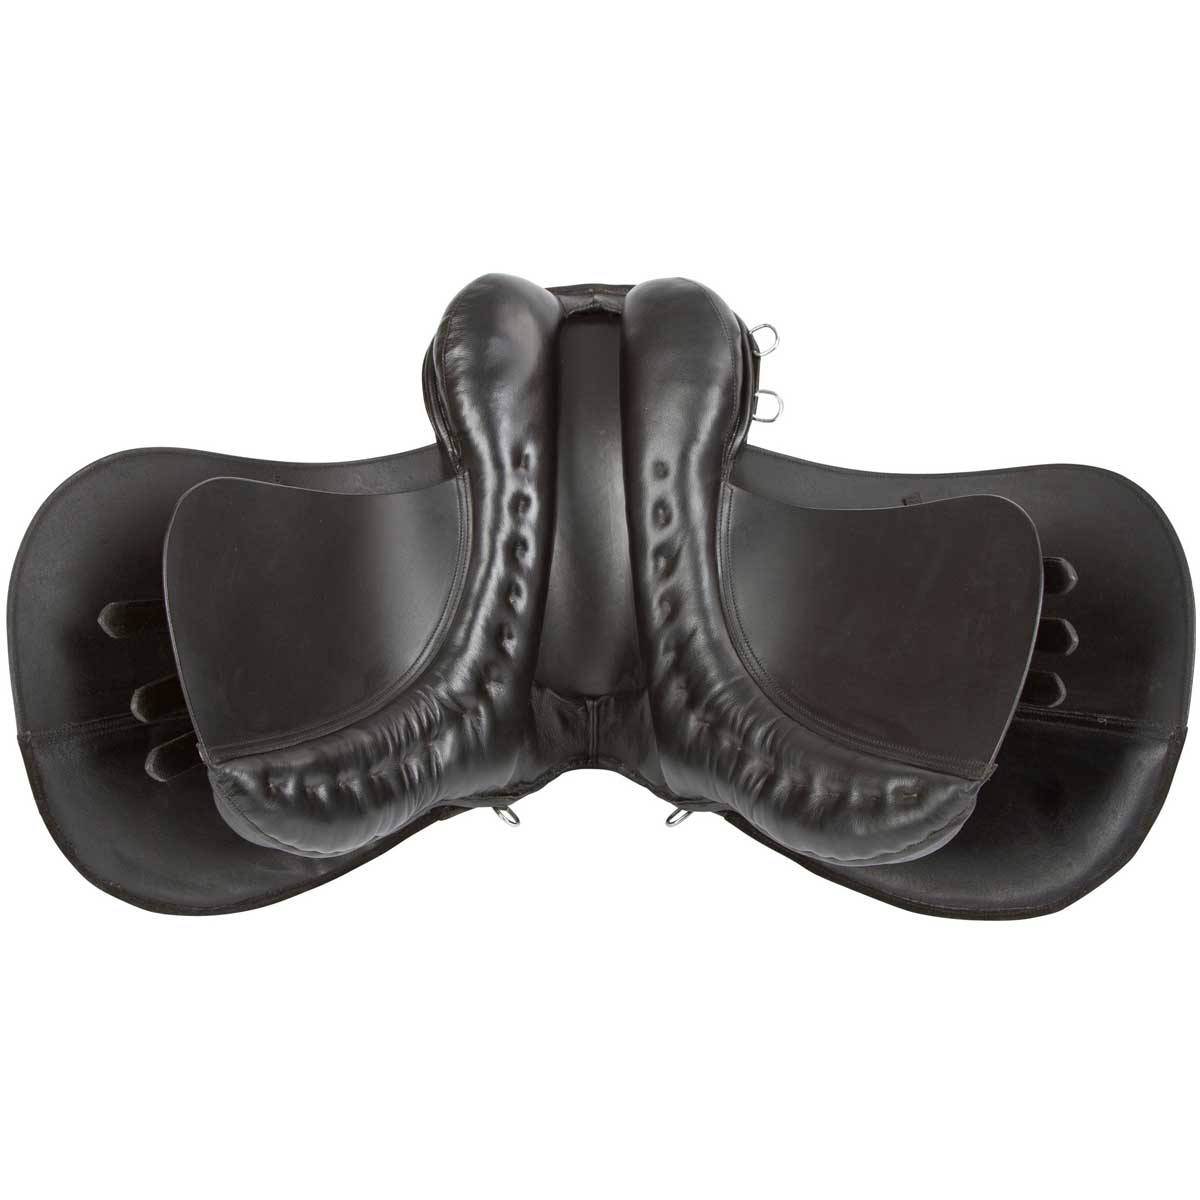 Covalliero saddle set leather Pony